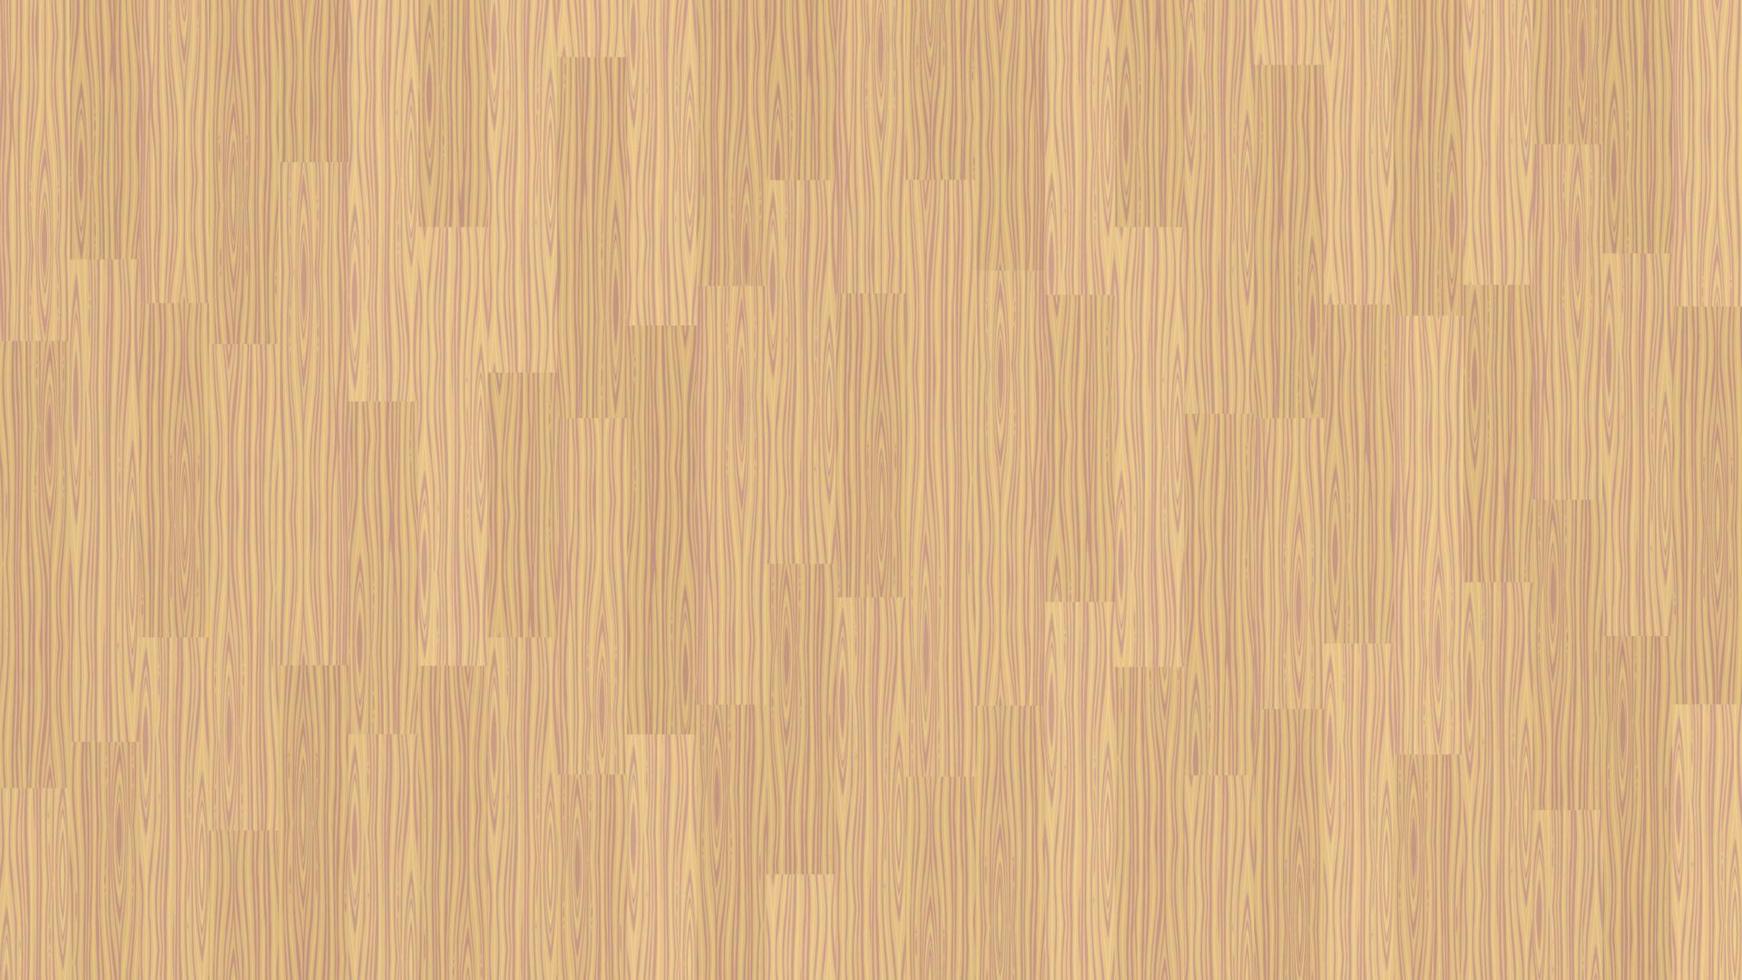 tablones de textura de madera patrones verticales fondo de diseño de color marrón claro vector